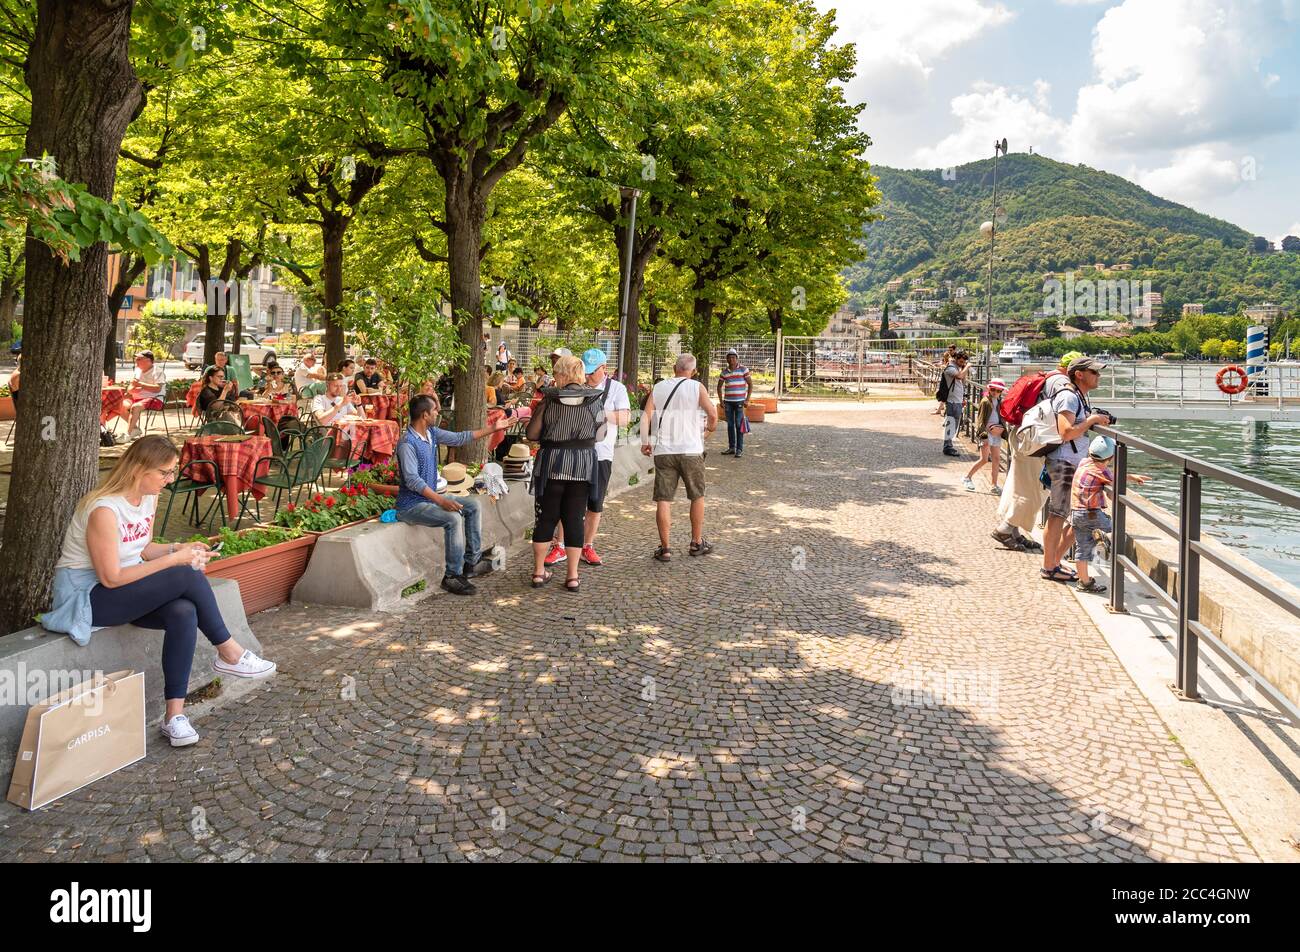 Côme, Lombardie, Italie - 18 juin 2019 : touristes profitant de la promenade du lac de Côme dans une chaude journée d'été dans le centre de Côme. Banque D'Images